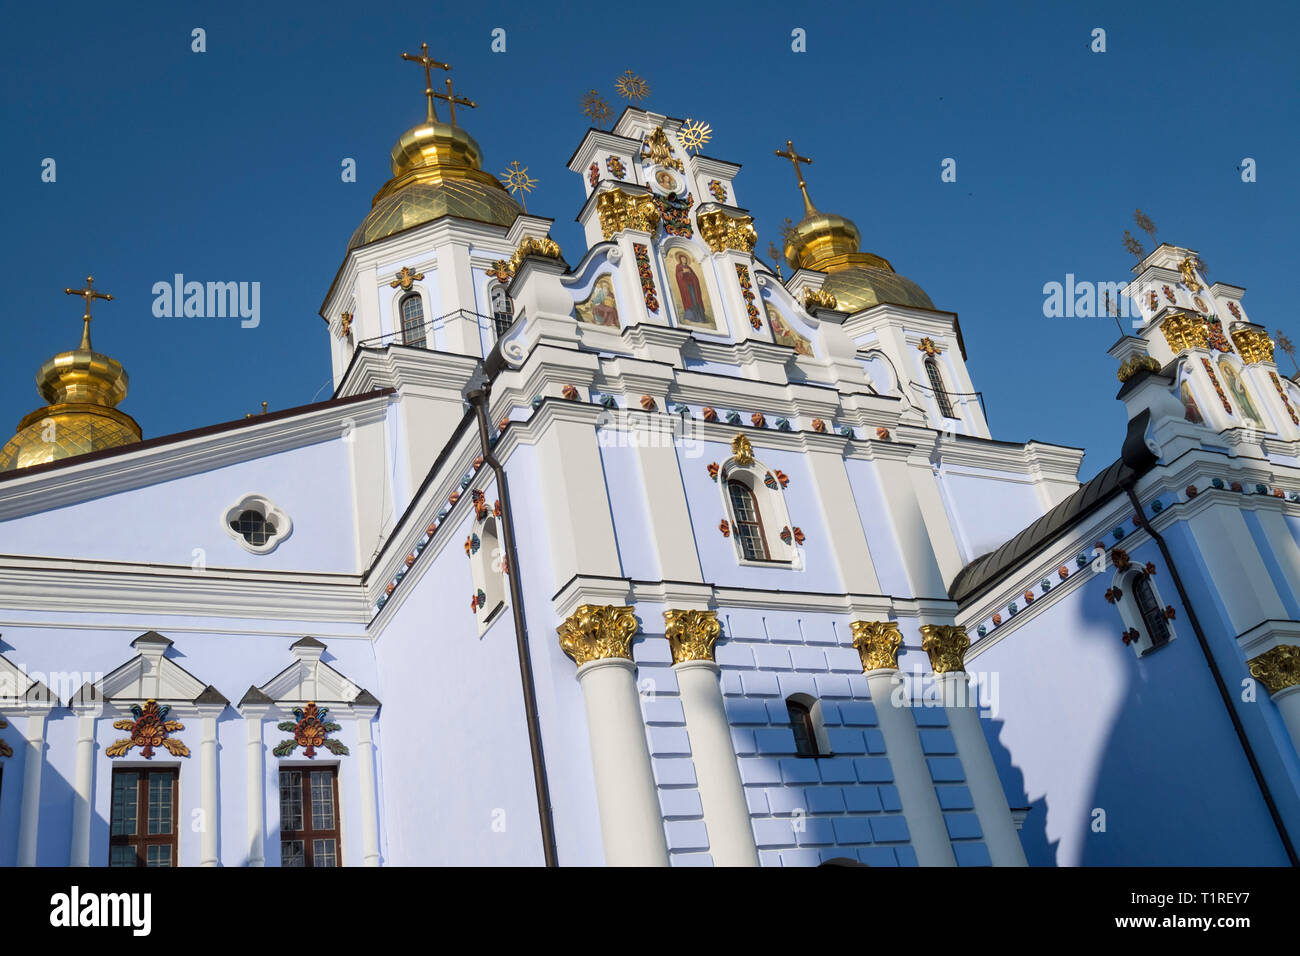 The stunning St. Michael's Golden-Domed Monastery in Kiev, Ukraine. Stock Photo